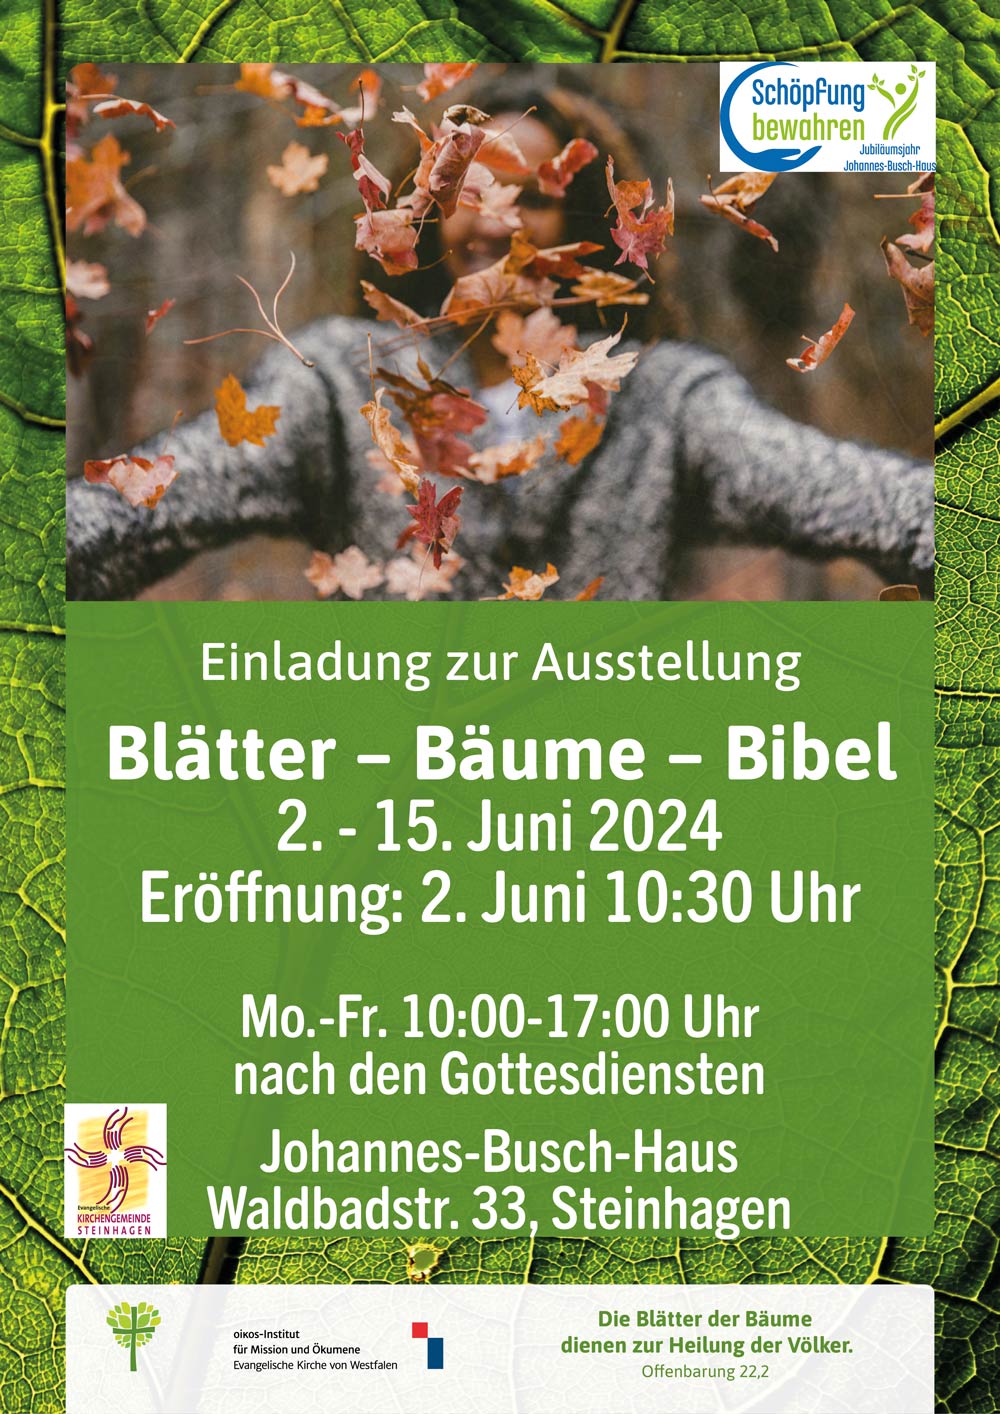 Plakat zur Austellung "Blätter - Bäume - Bibel"